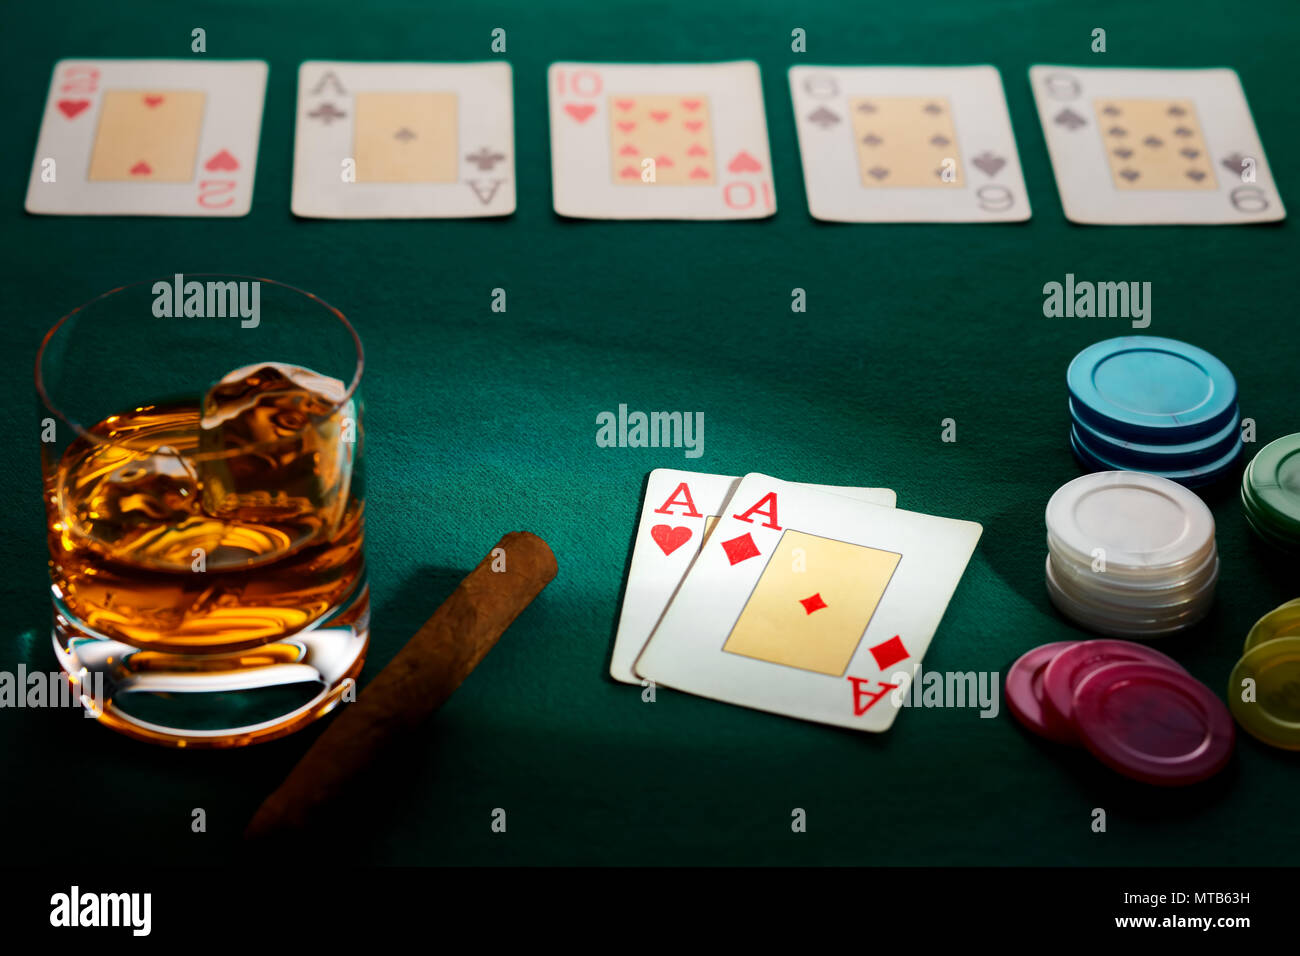 Le Texas hold'em poker avec une main de deux as, chips, cigare, et le verre de whisky sur le drap vert. Remporté par trois as. Banque D'Images